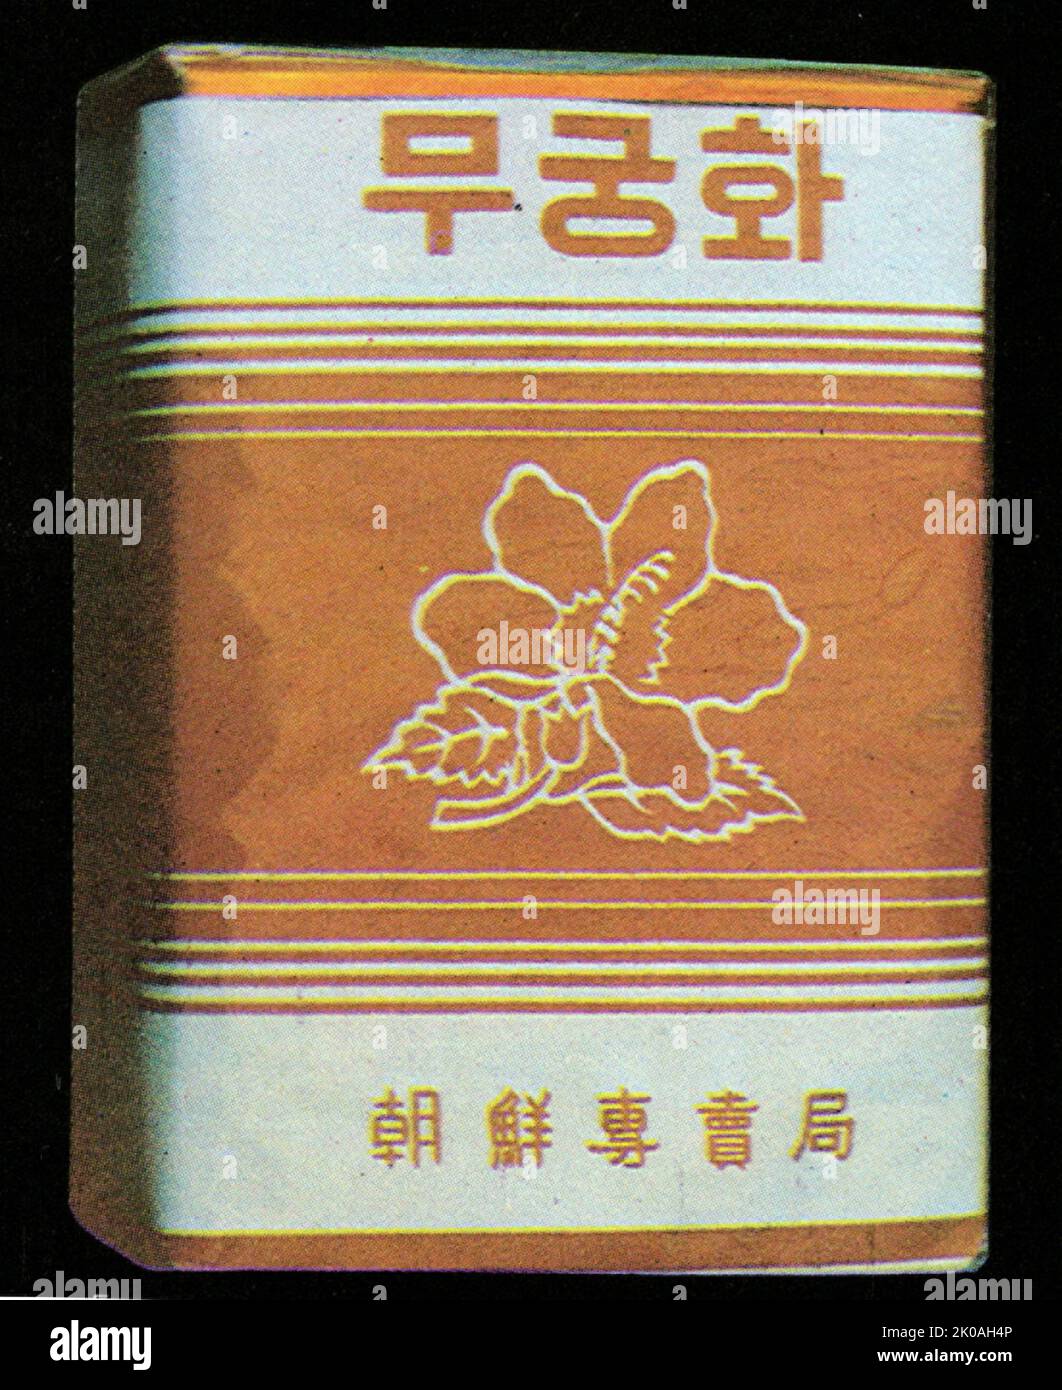 Paquet de cigarettes avec la fleur nationale de Corée 'Mugunghwa (Rose de Sharon)', de 1945 Corée Banque D'Images